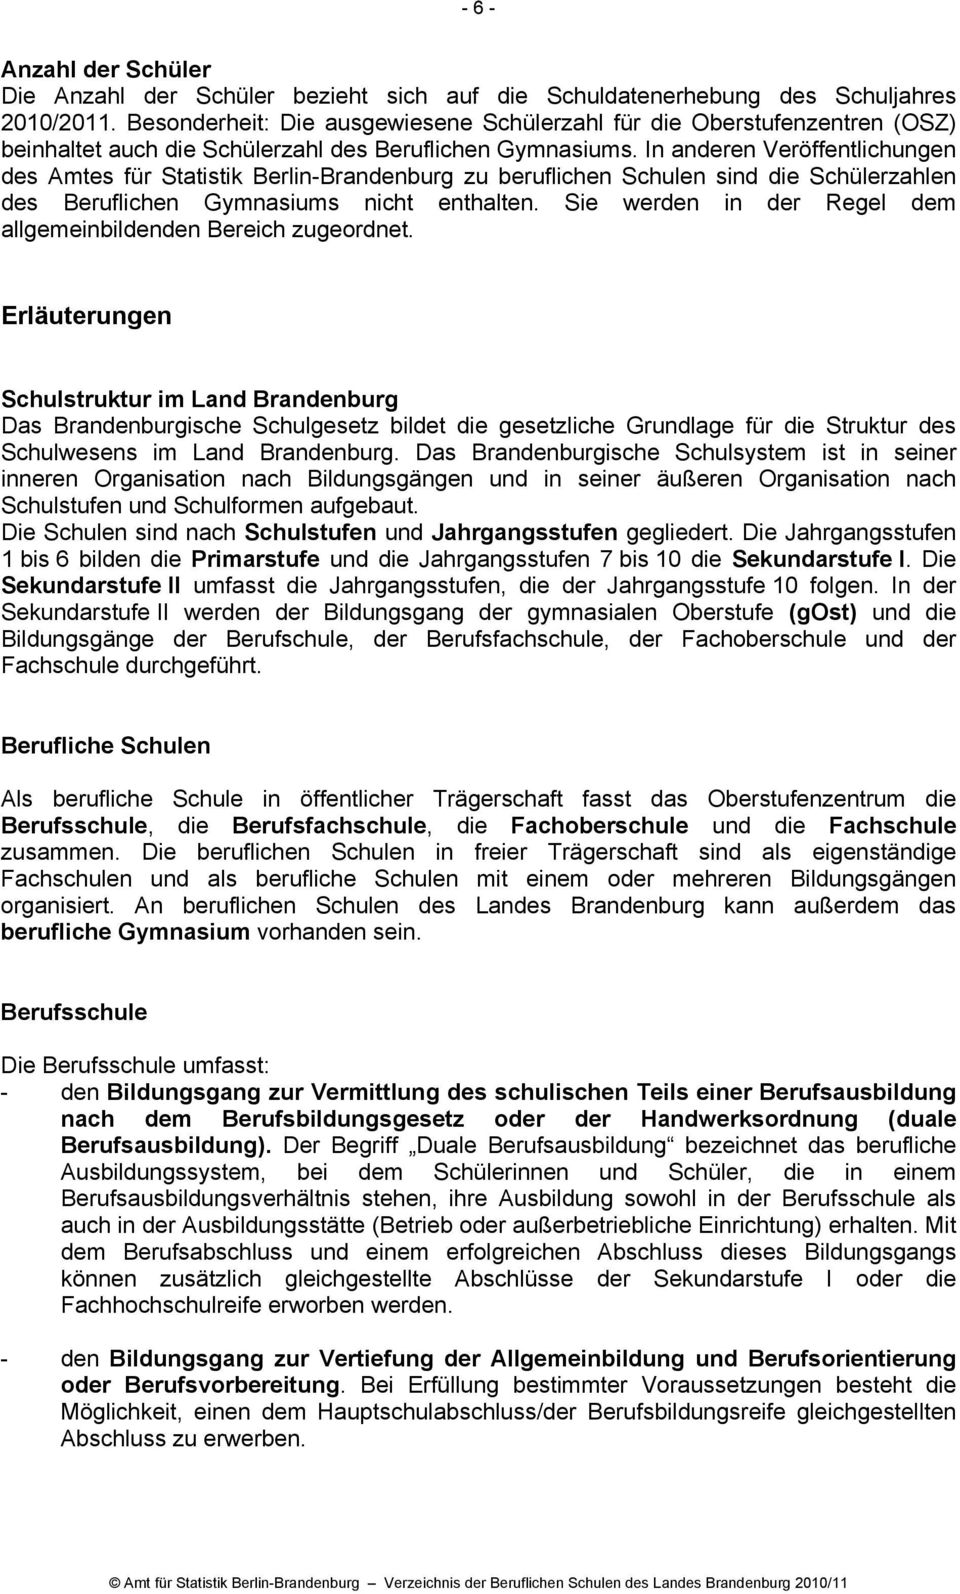 In anderen Veröffentlichungen des Amtes für Statistik Berlin-Brandenburg zu beruflichen Schulen sind die Schülerzahlen des Beruflichen Gymnasiums nicht enthalten.